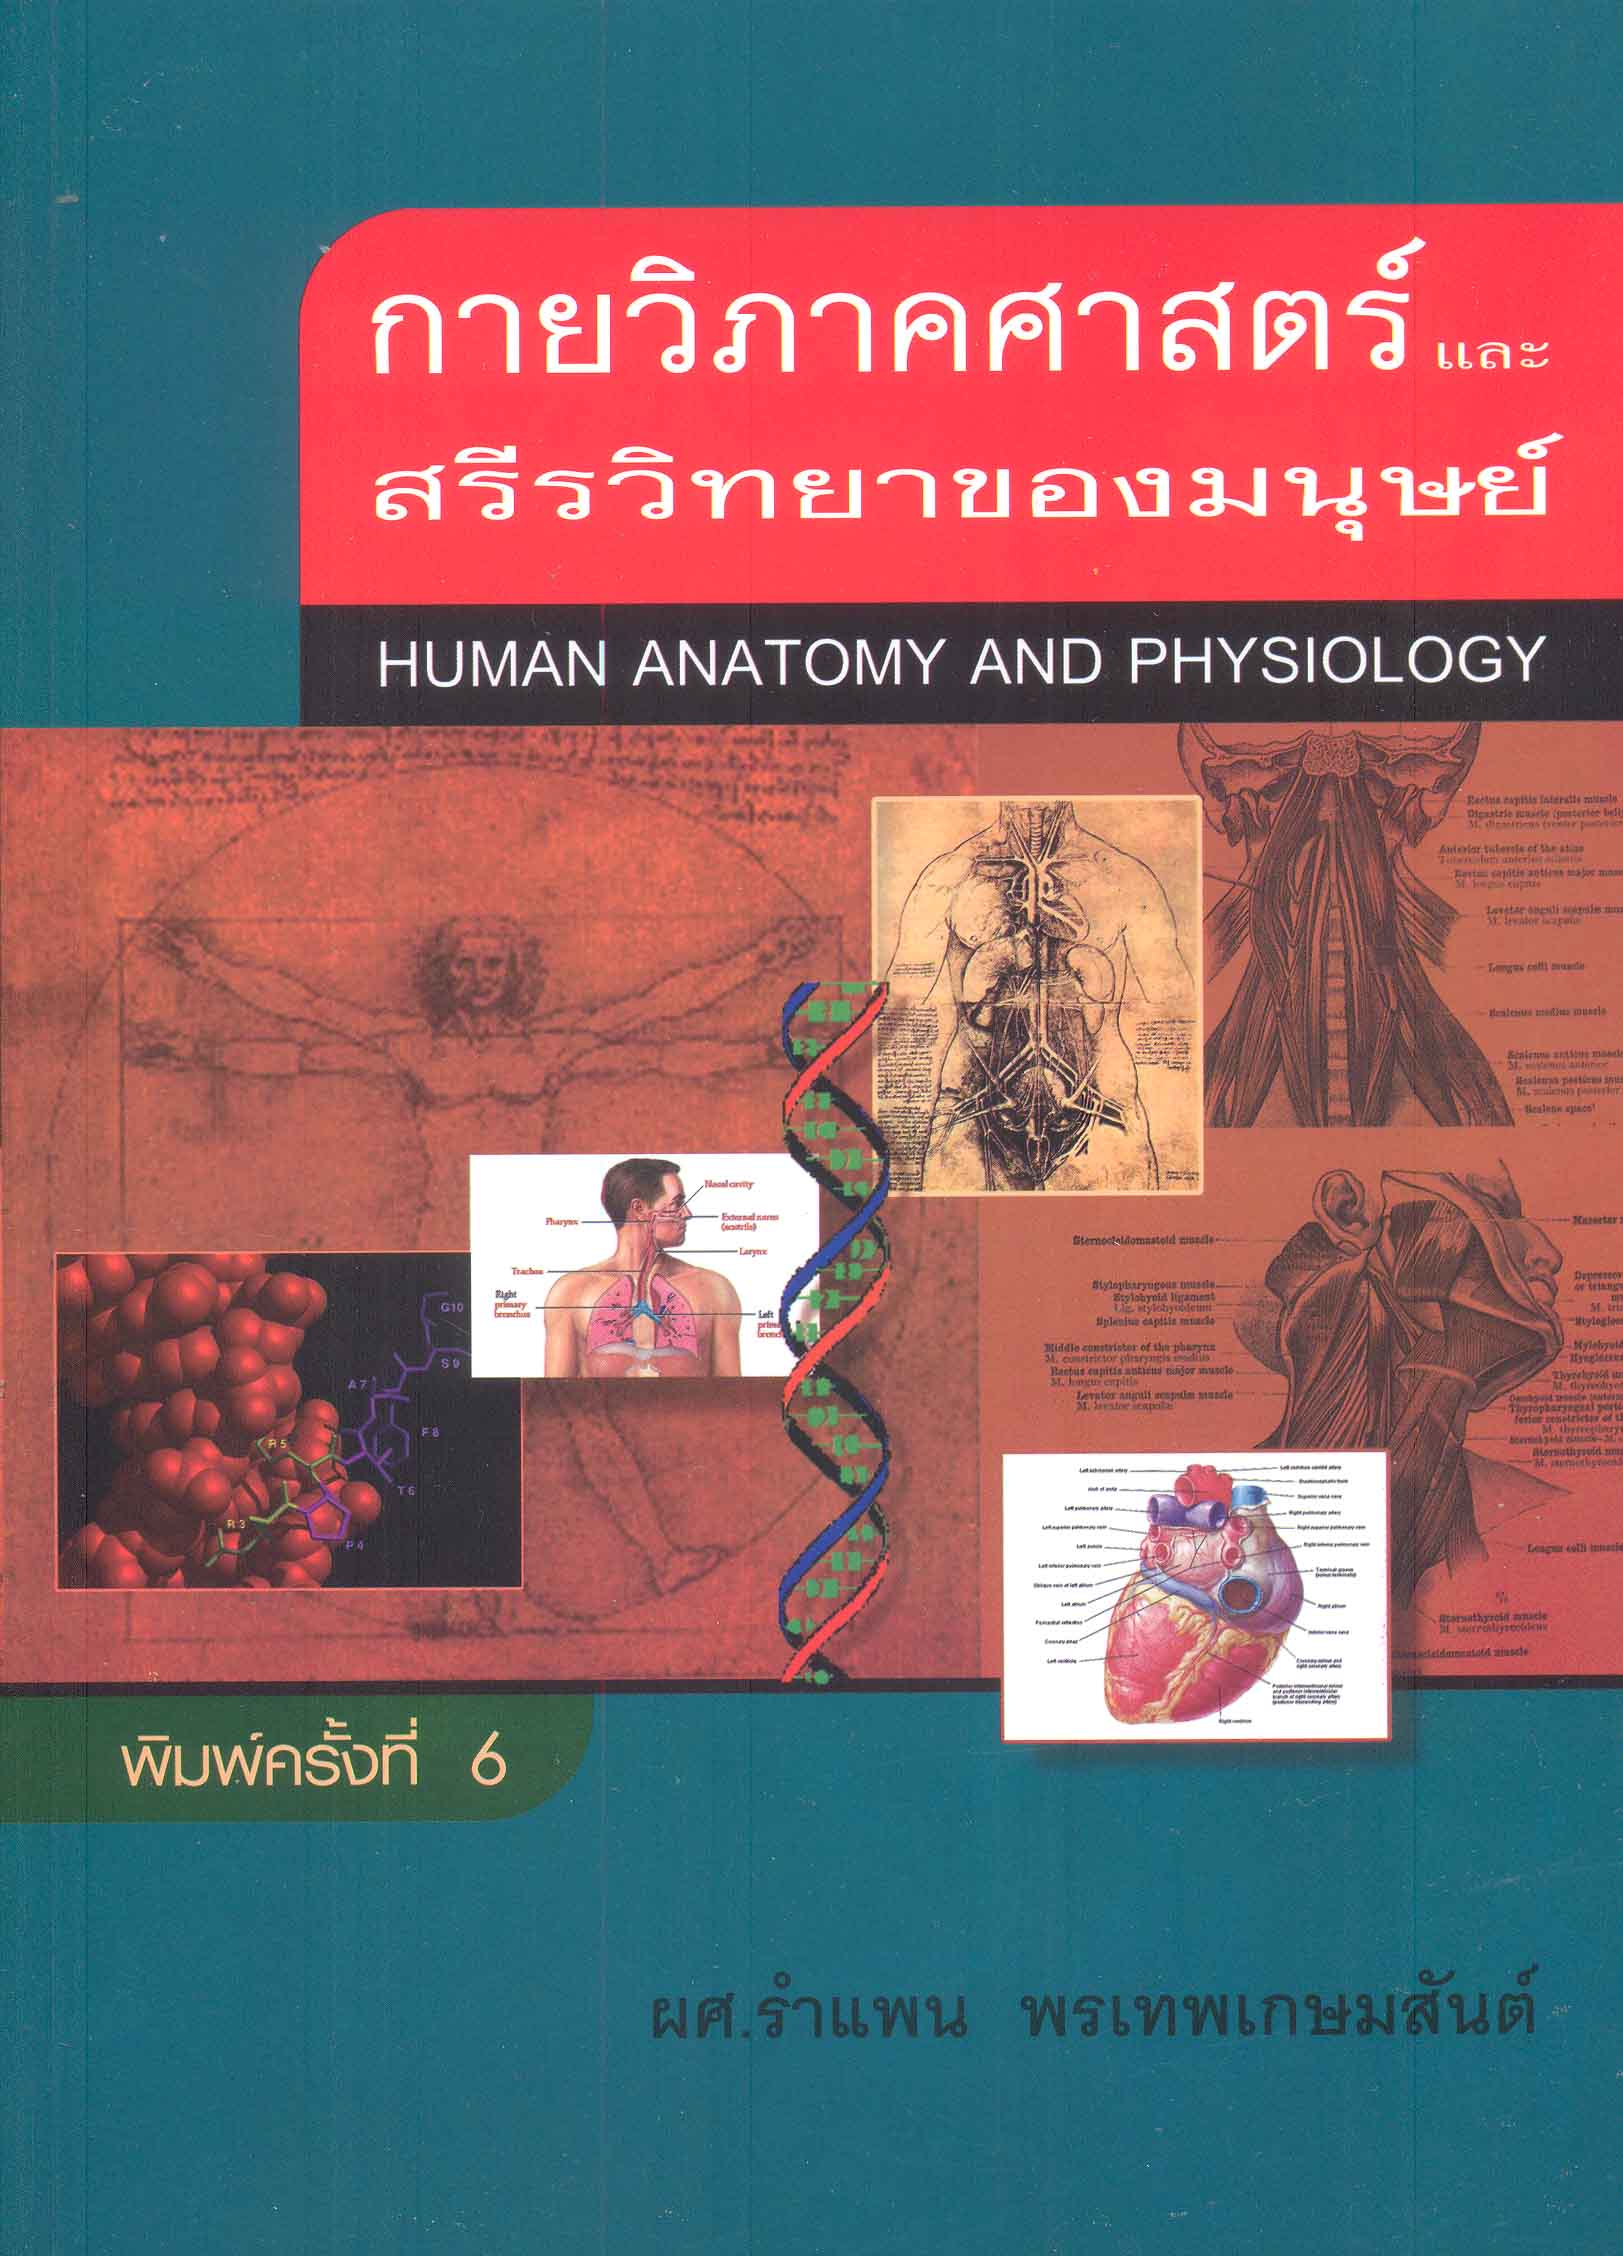 กายวิภาคศาสตร์และสรีรวิทยาของมนุษย์ = Human anatomy and physiology